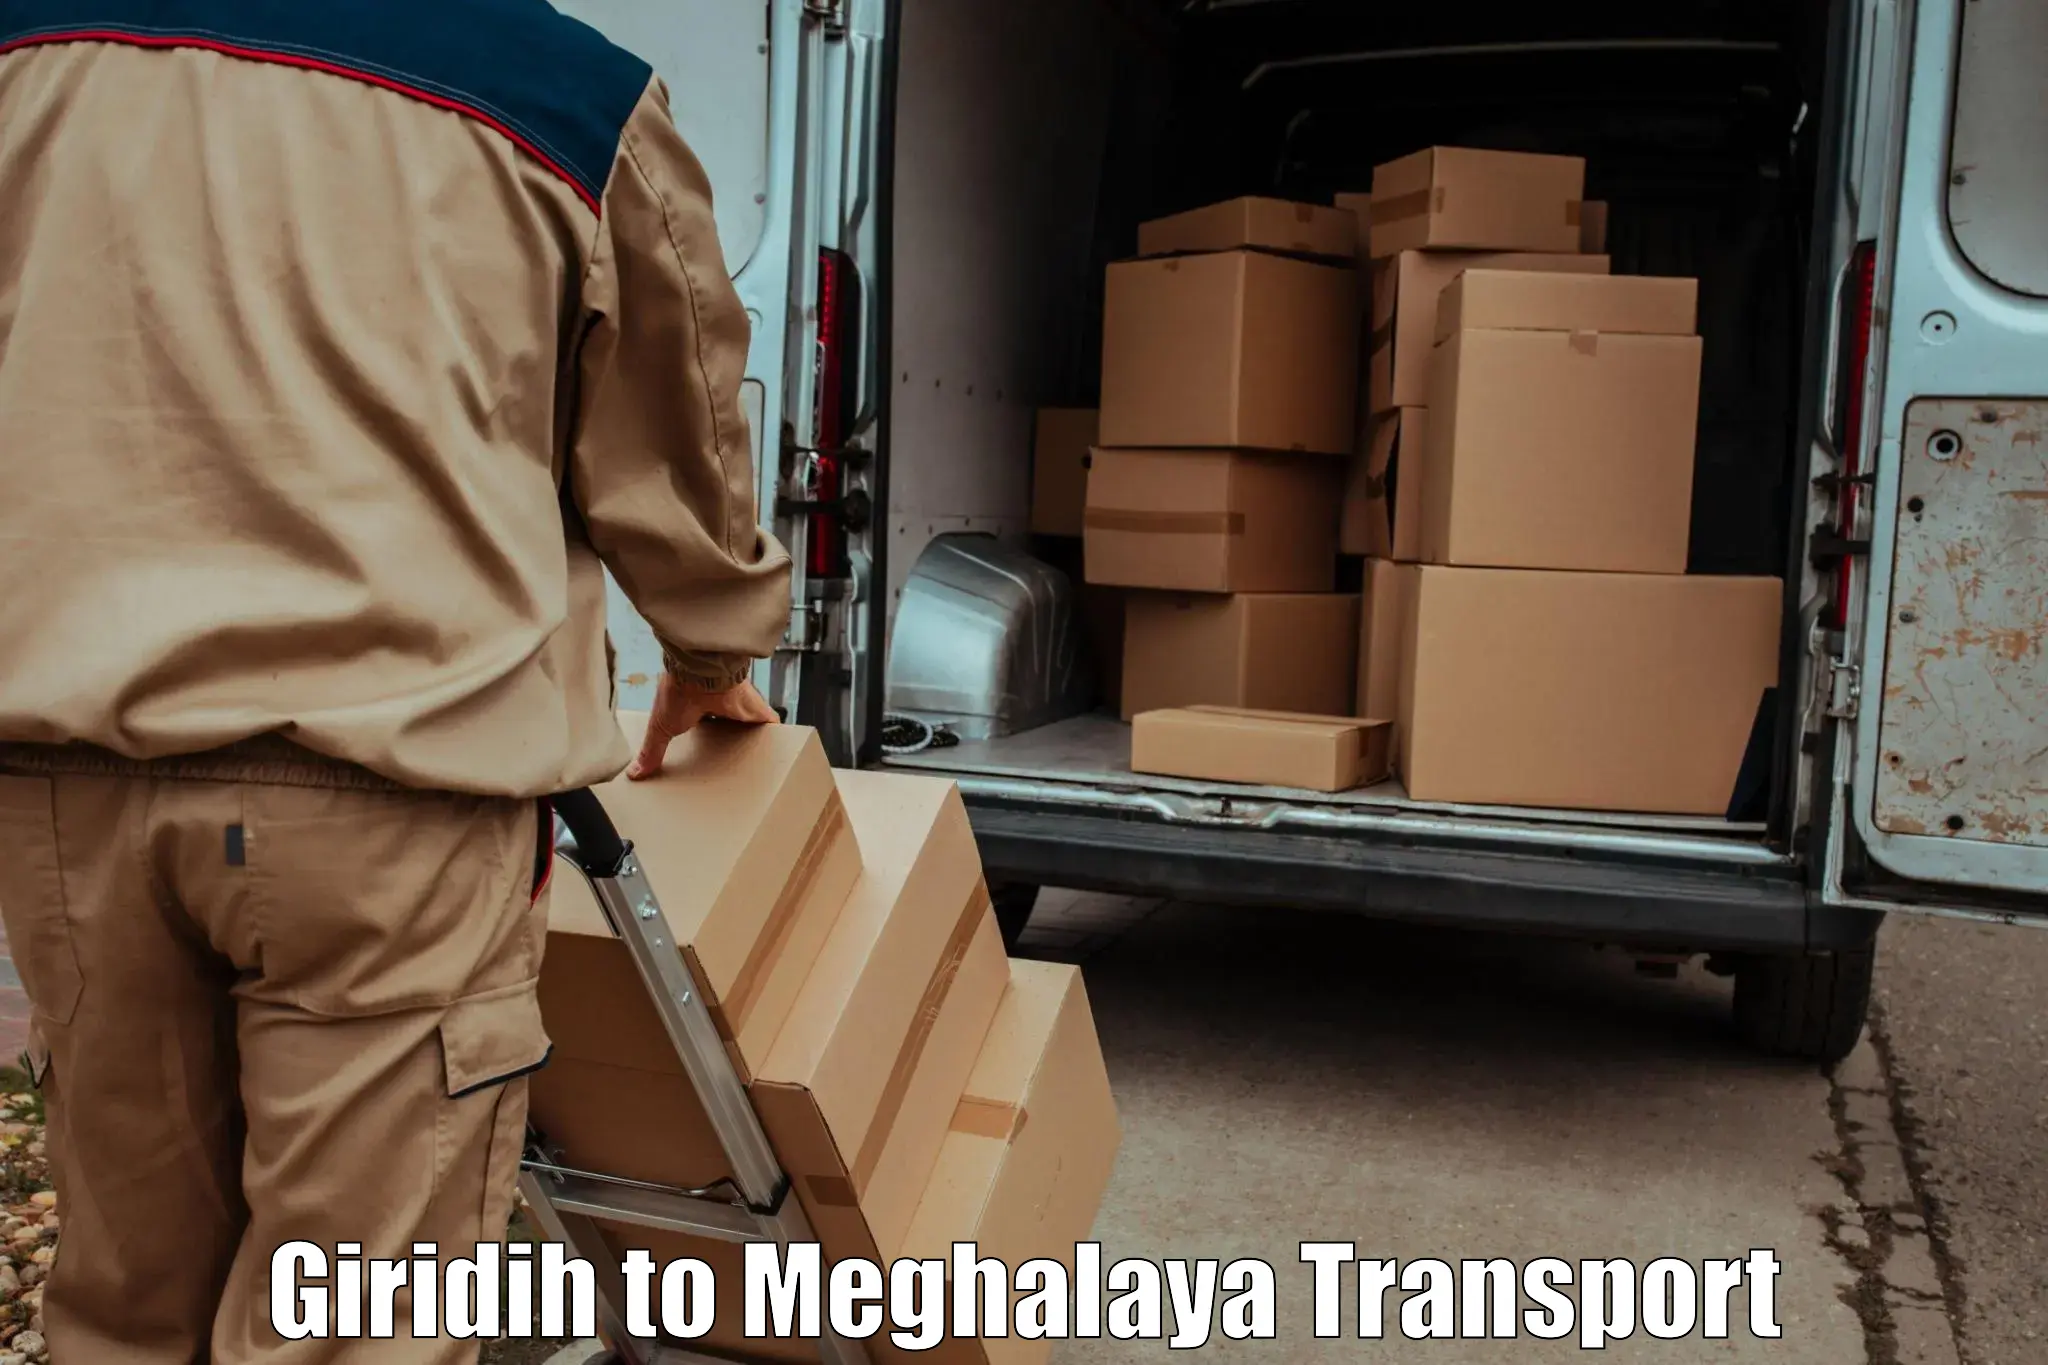 Goods transport services Giridih to Cherrapunji